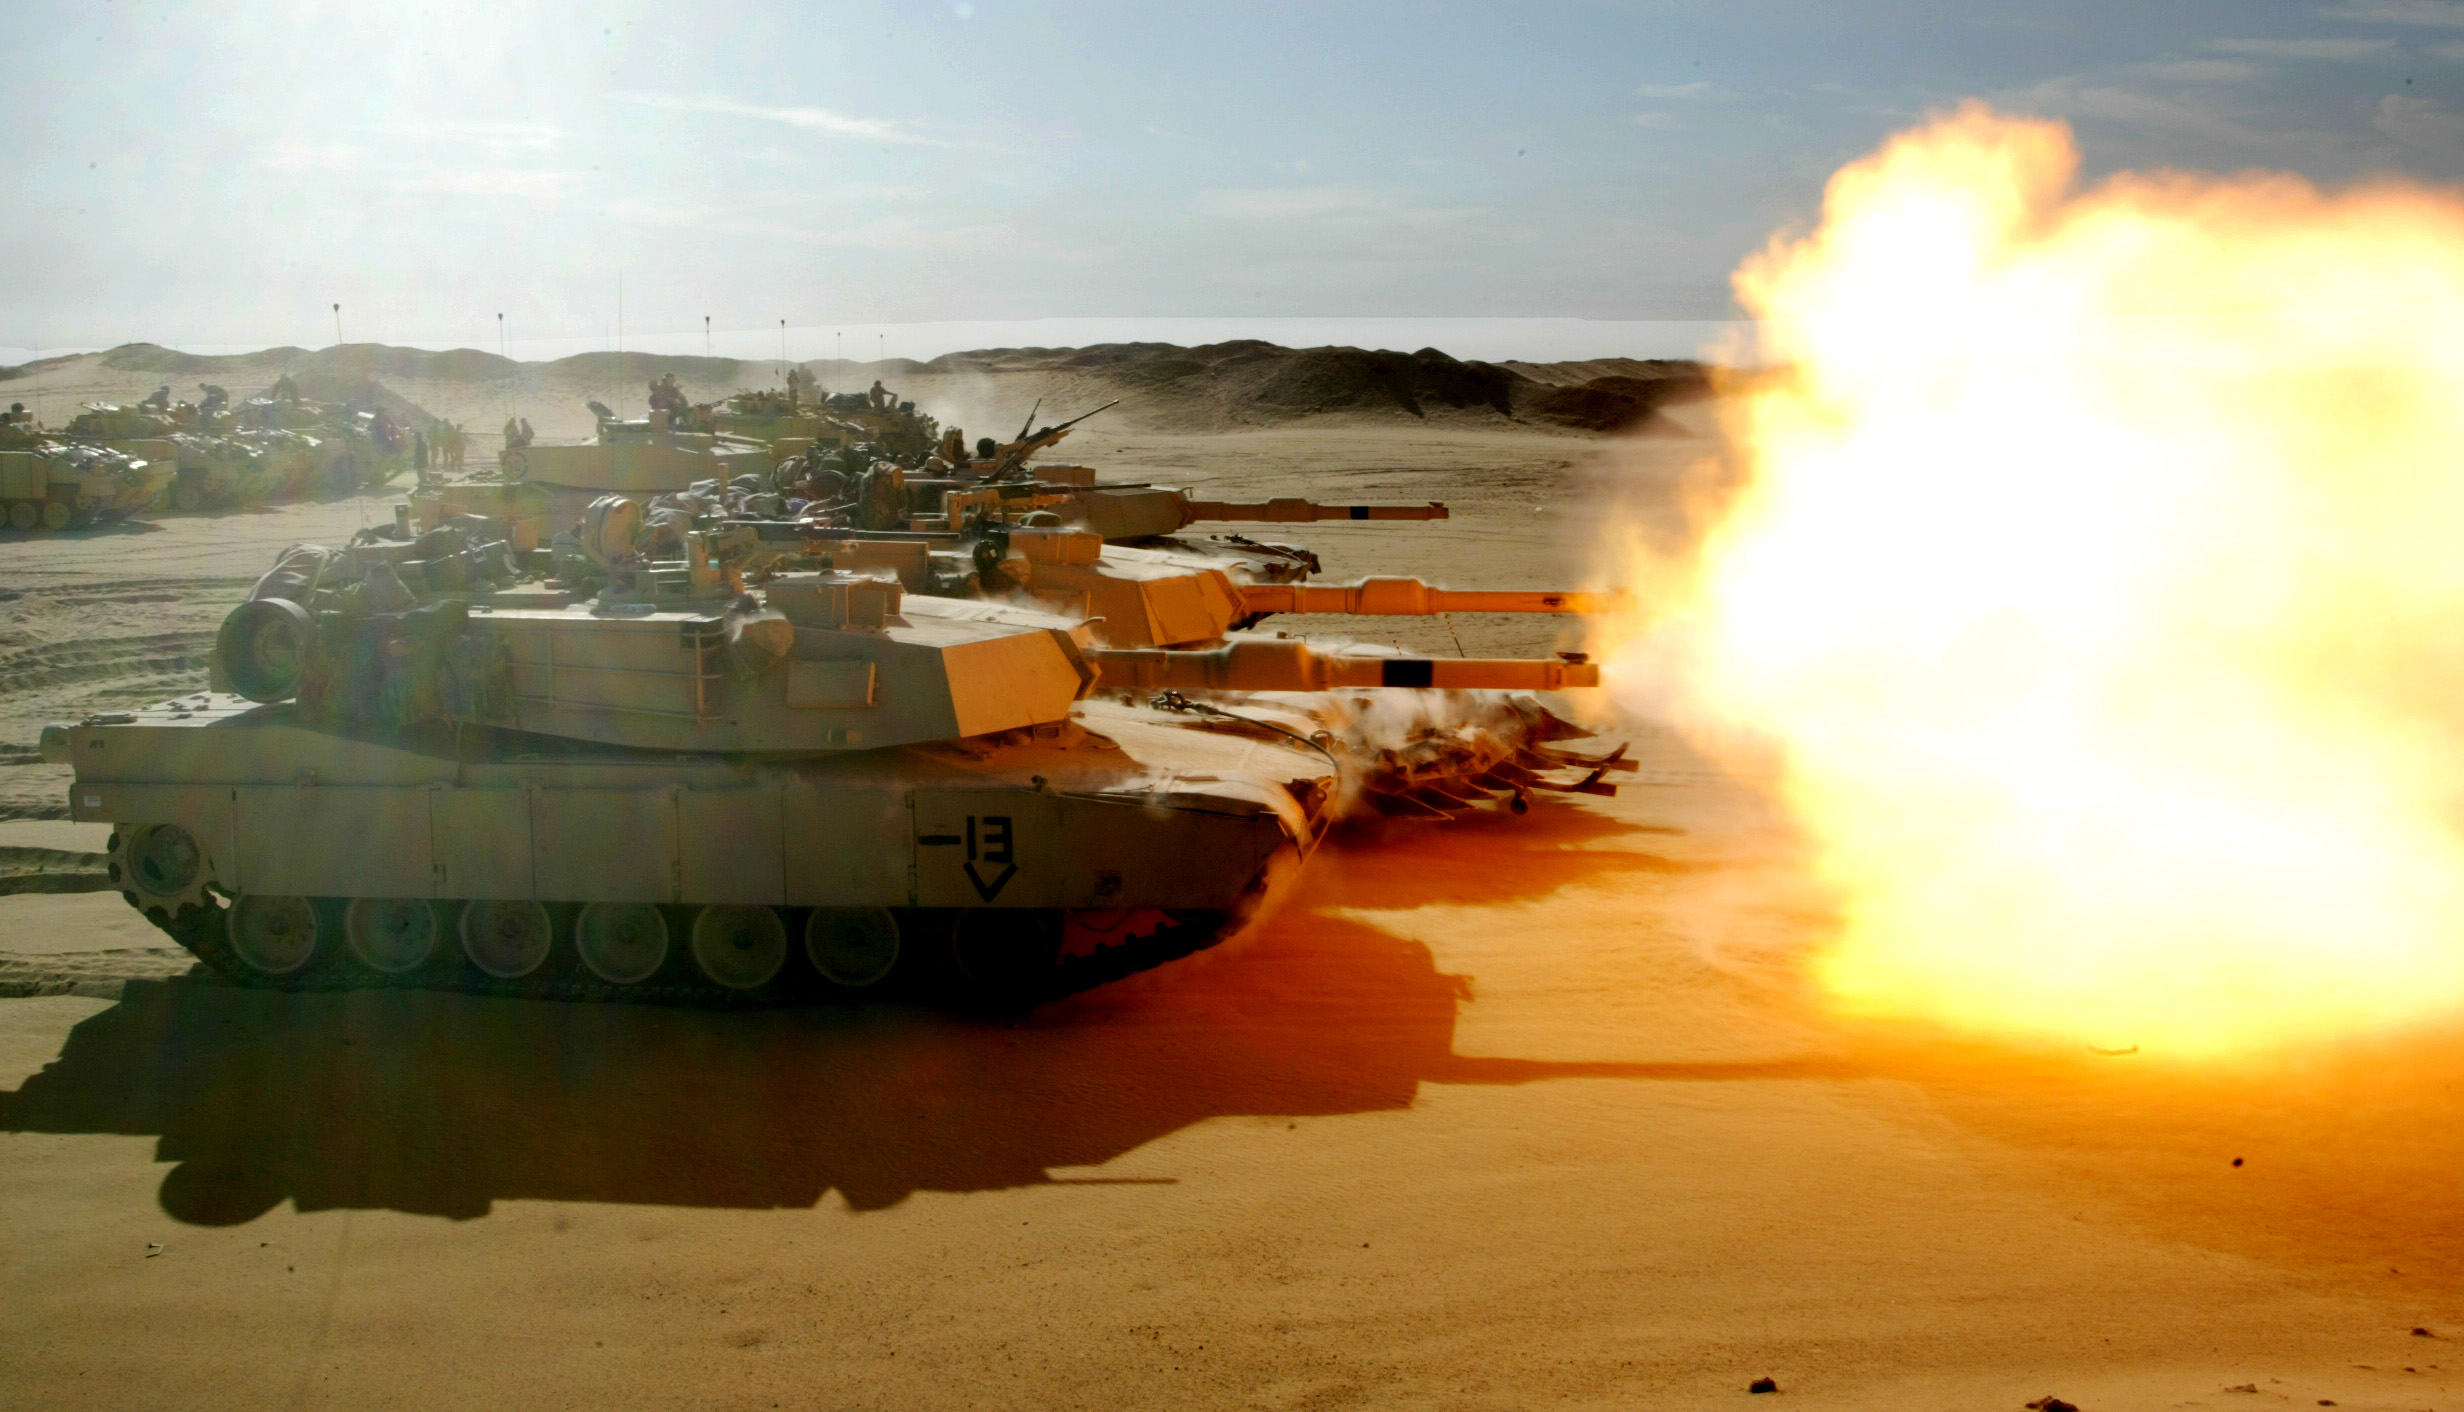 ΥΕΘΑ: Μελετά πρόταση των ΗΠΑ για μεταχειρισμένα άρματα μάχης